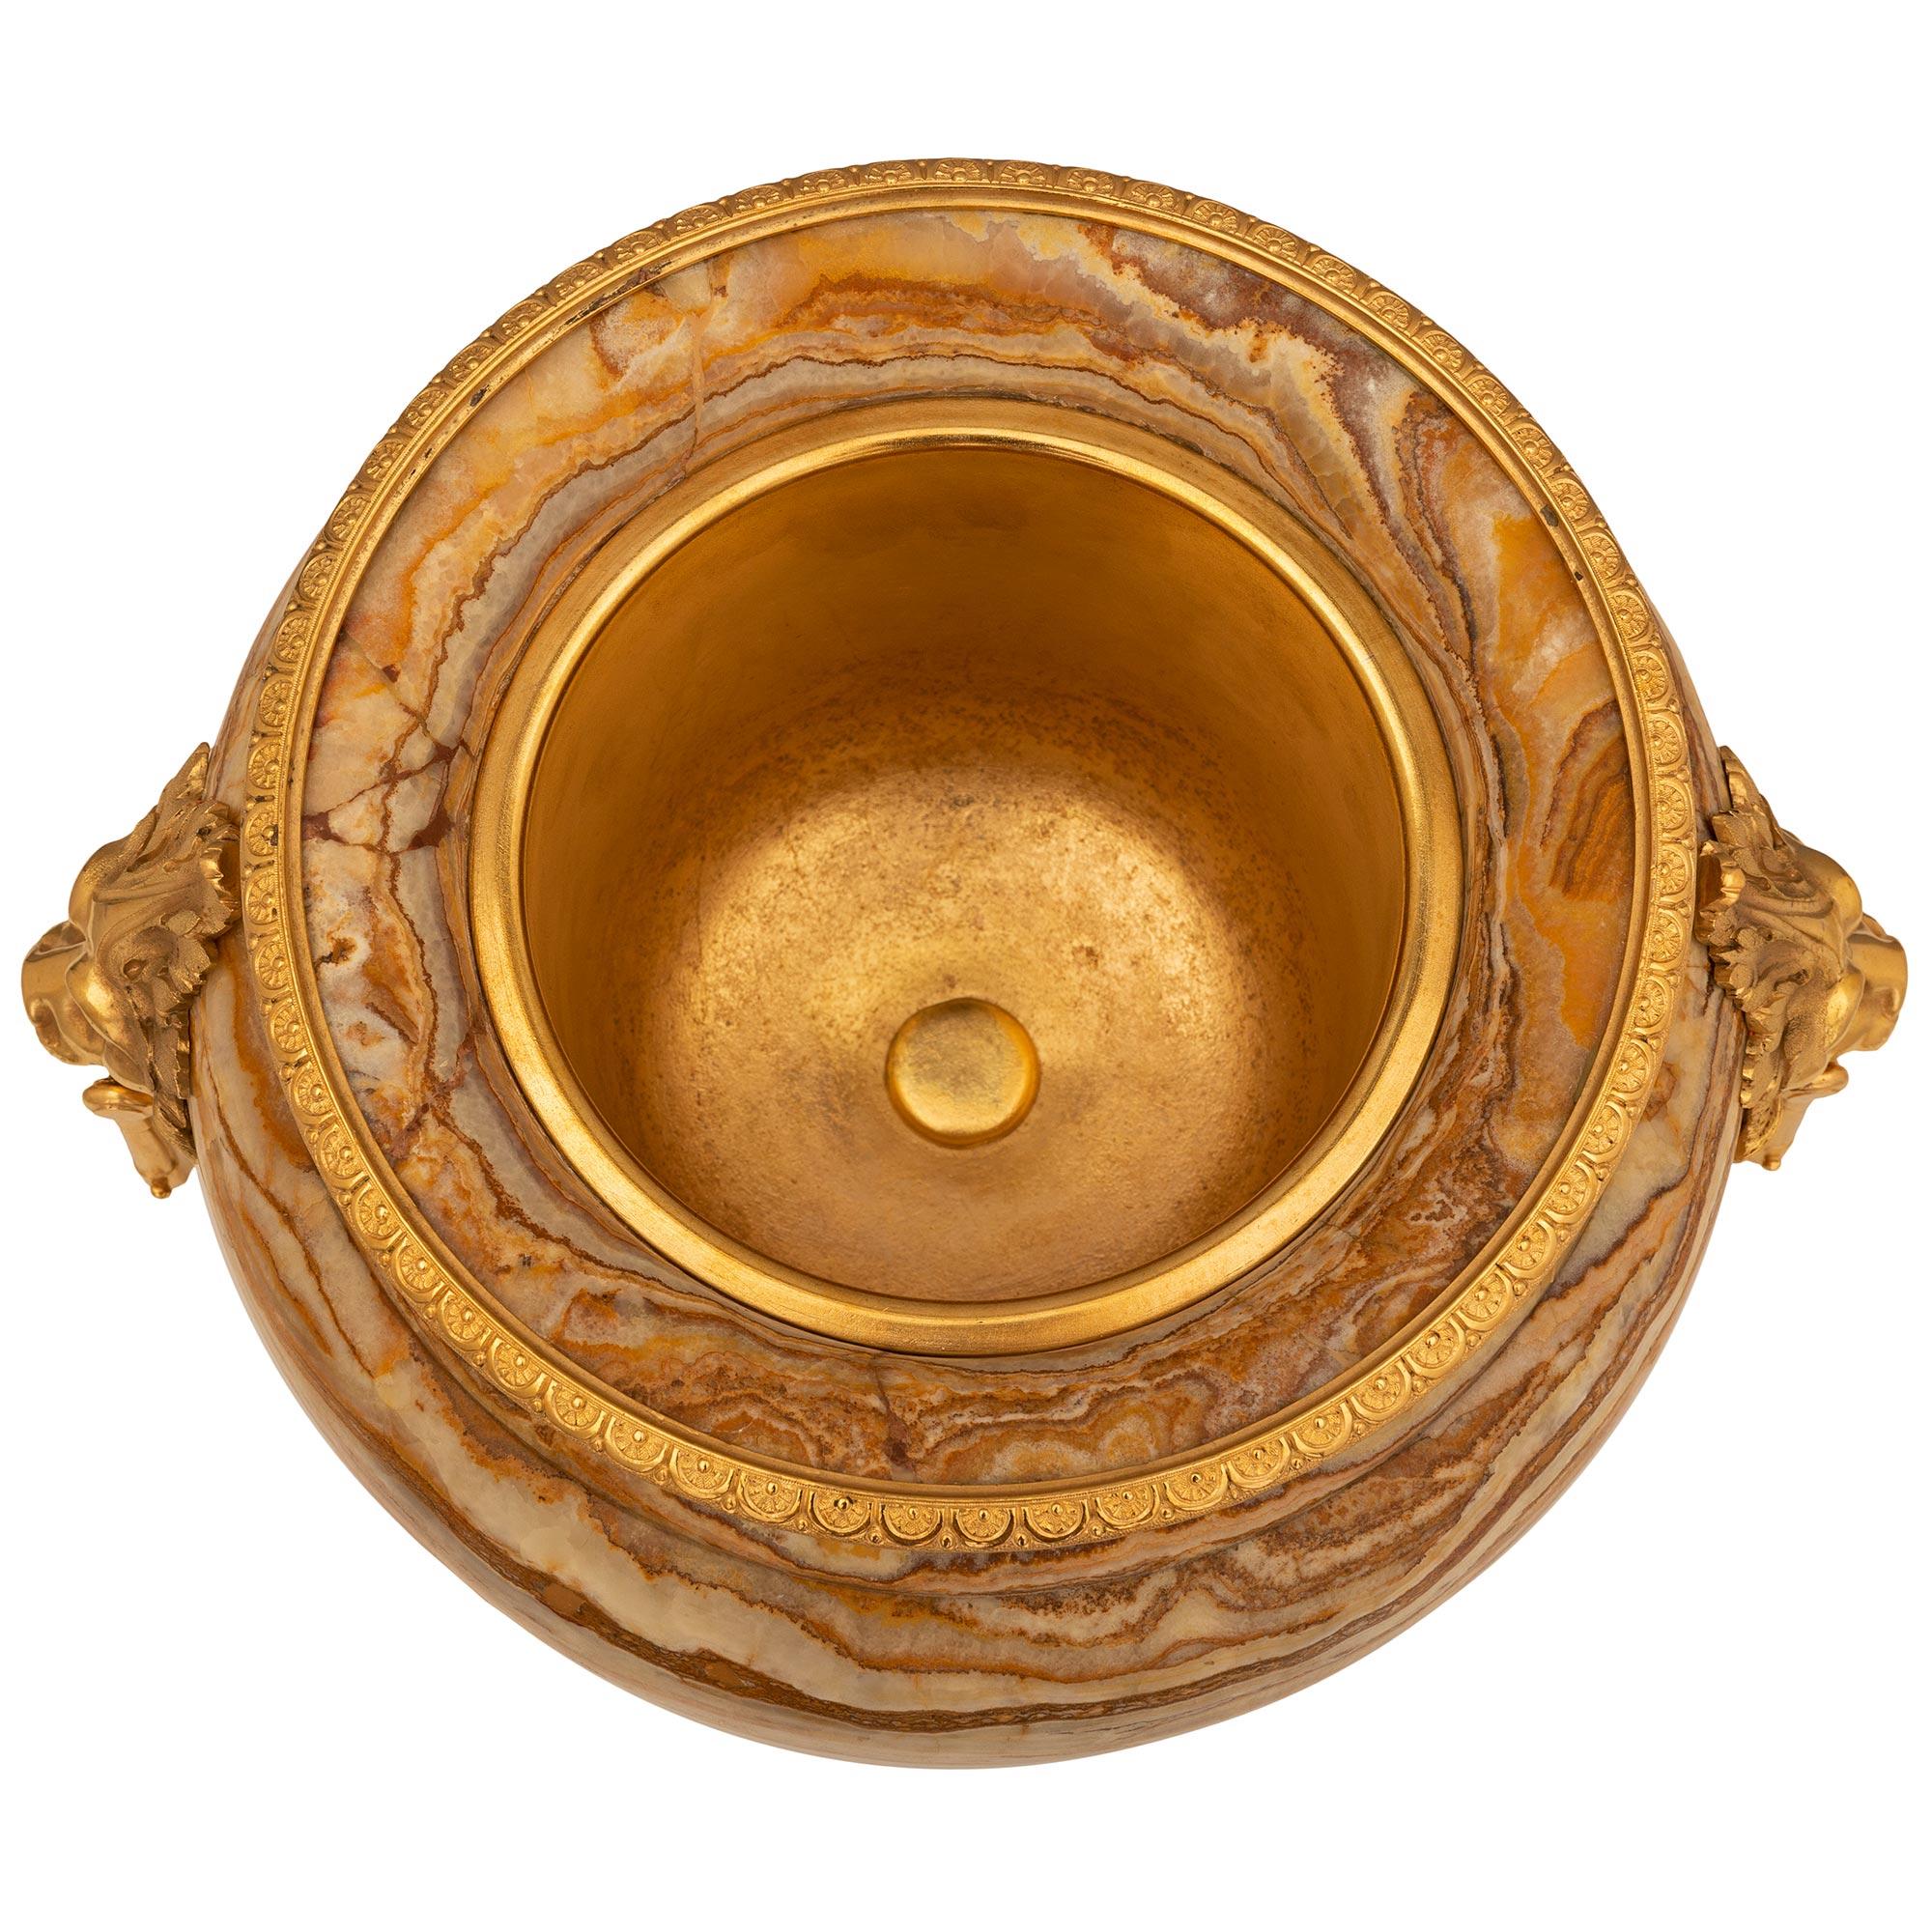 Une urne de grande qualité, datant de la Renaissance française du 19ème siècle, en bronze doré et en marbre Alabastro Fiorito. L'urne est surélevée par une remarquable base carrée en bronze doré avec de beaux pieds en forme de pattes, de beaux